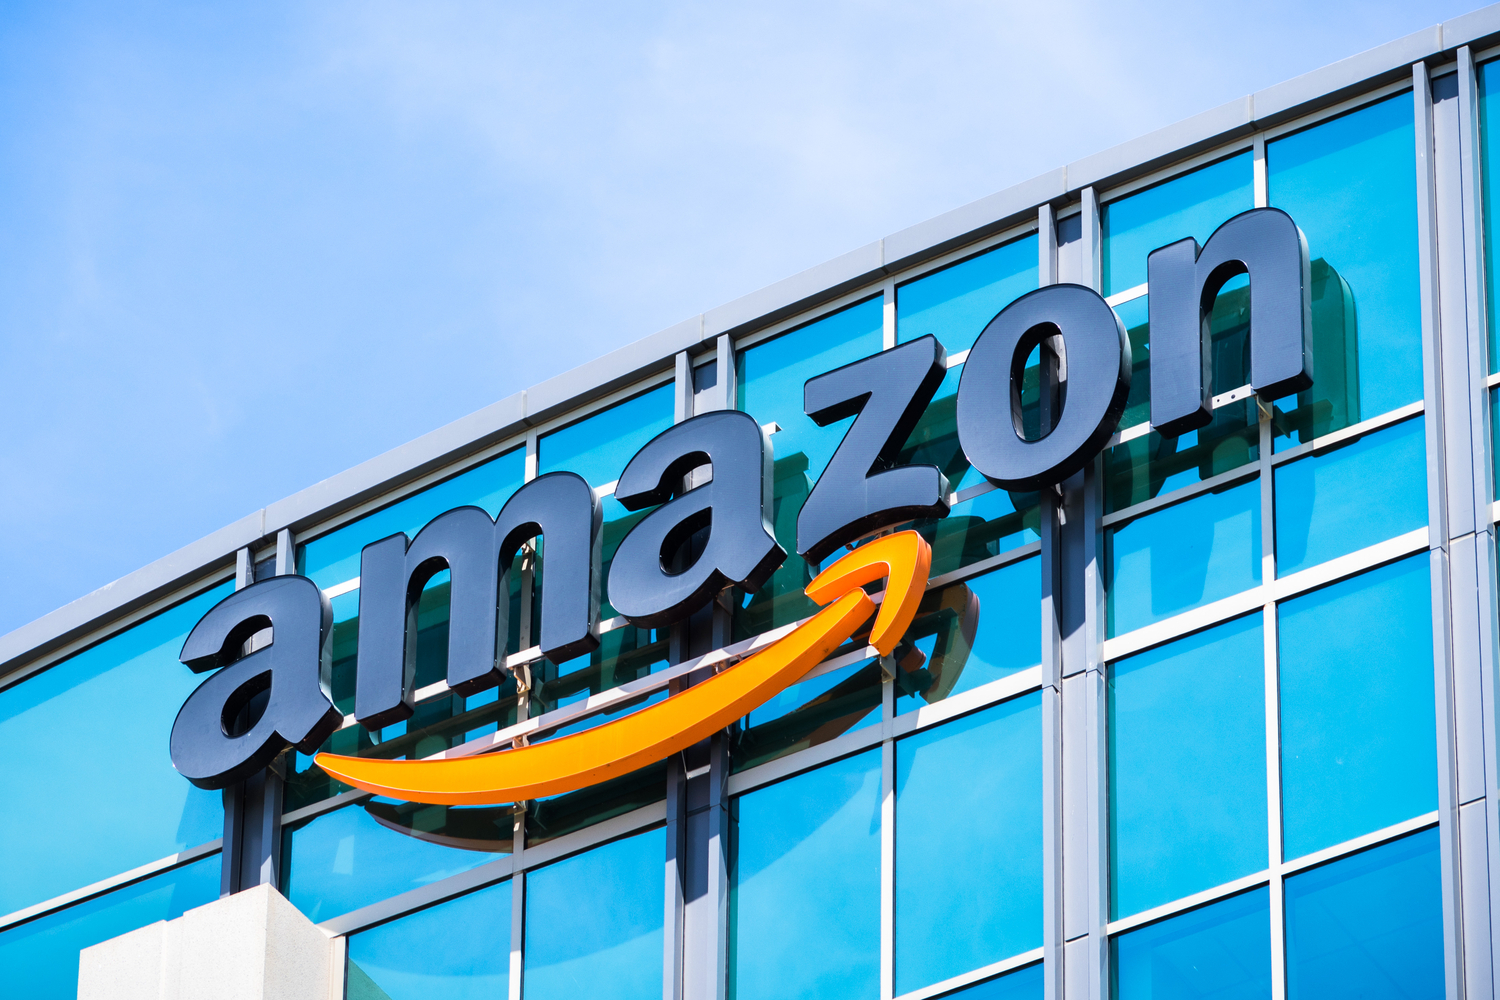 Gigantul Amazon vrea să cucerească India: Jeff Bezos anunţă o investiţie de 1 miliard de dolari